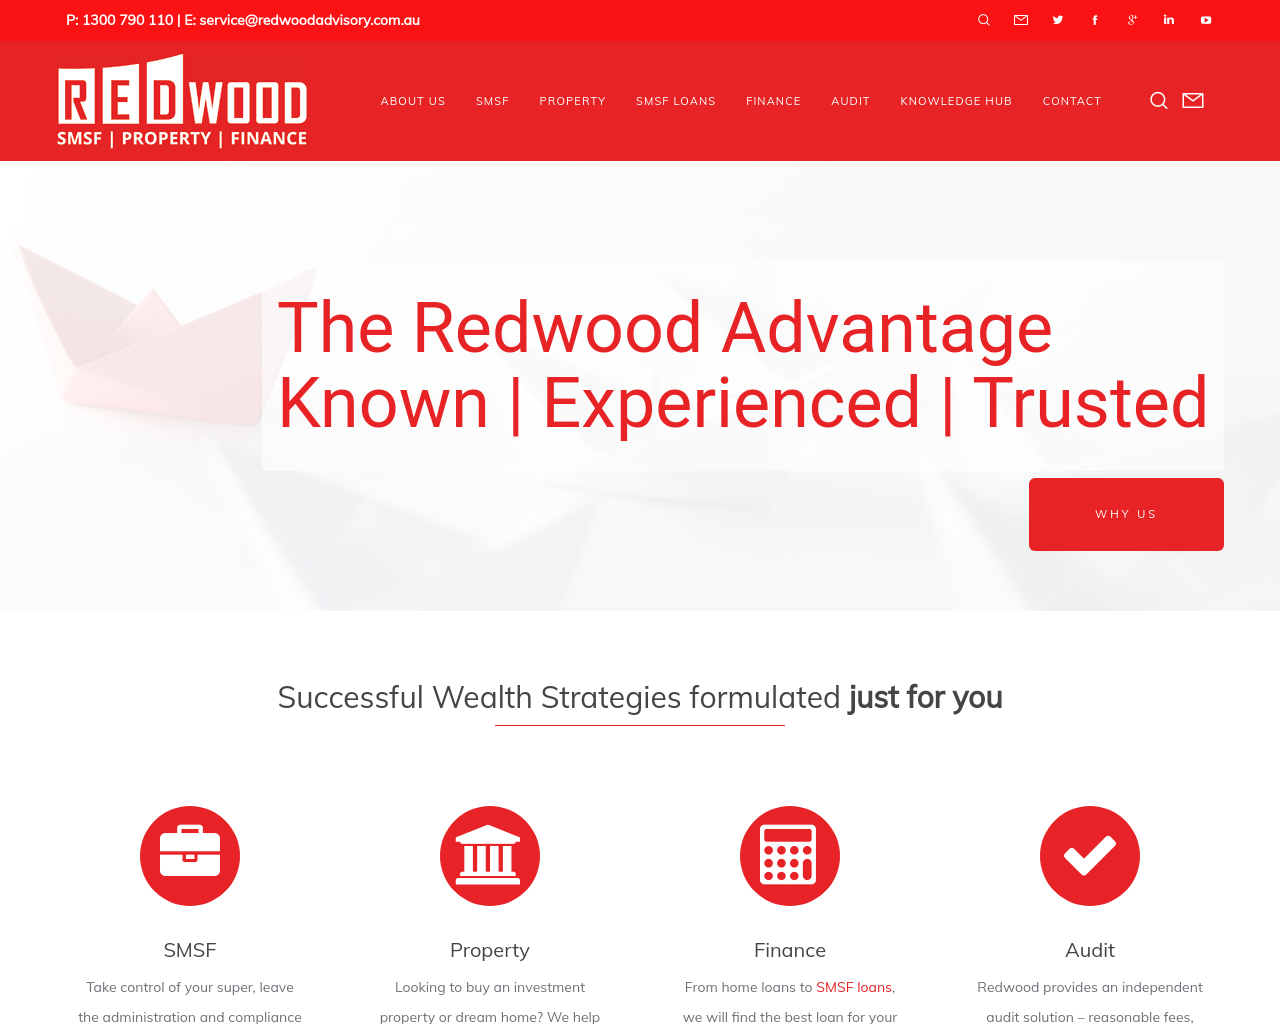 redwoodadvisory.com.au